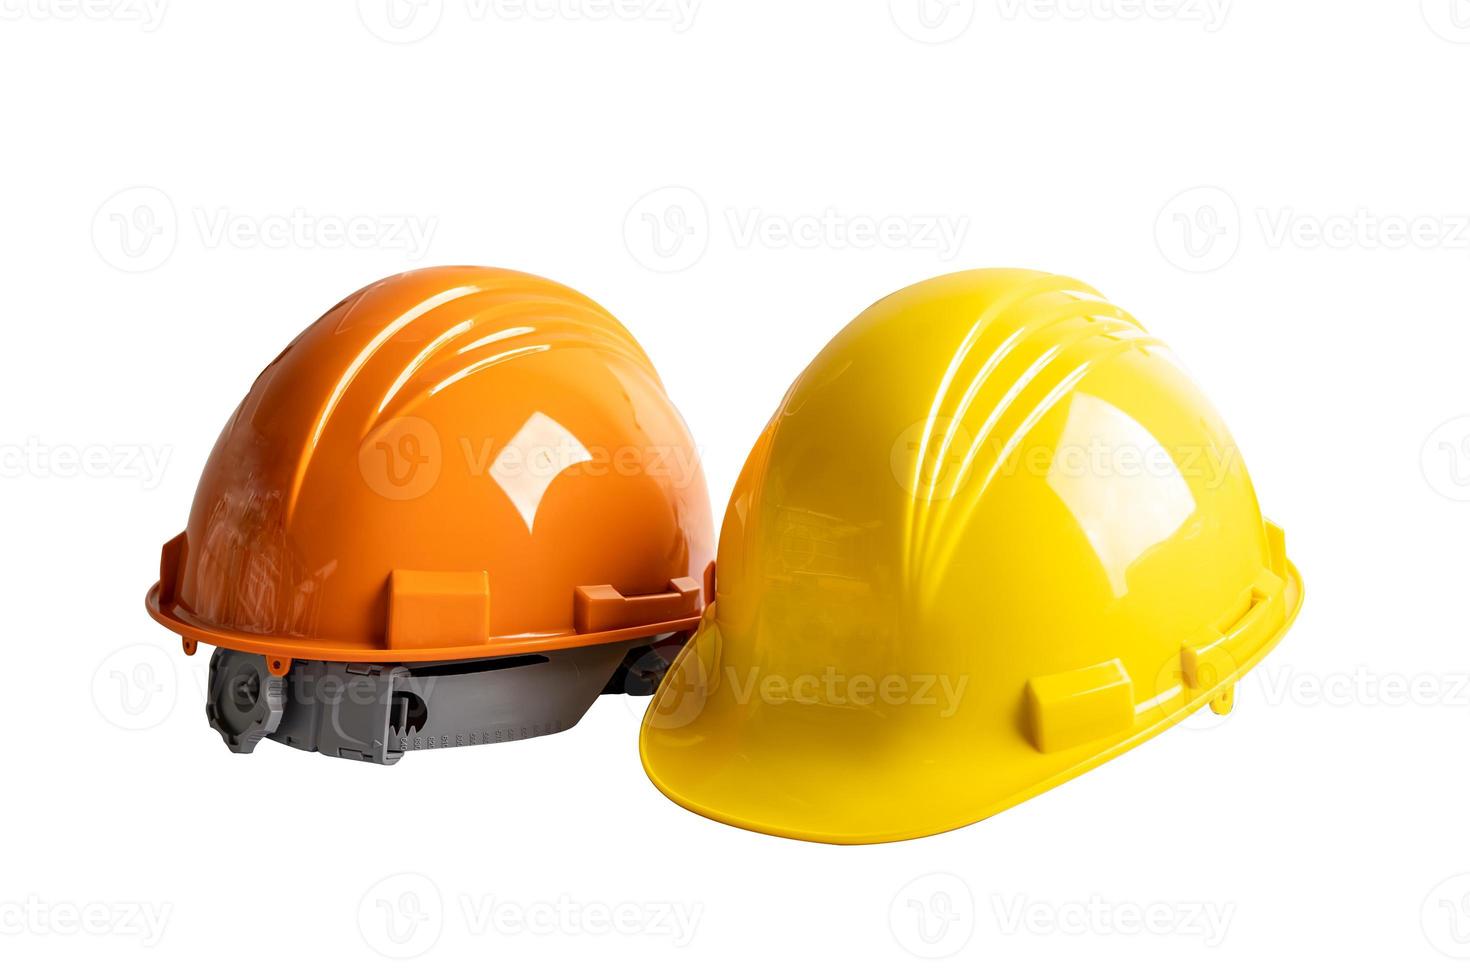 chapéu de capacete rígido de segurança primeiro isolado no fundo branco com traçado de recorte, construção de engenharia e conceito de arquitetura. foto